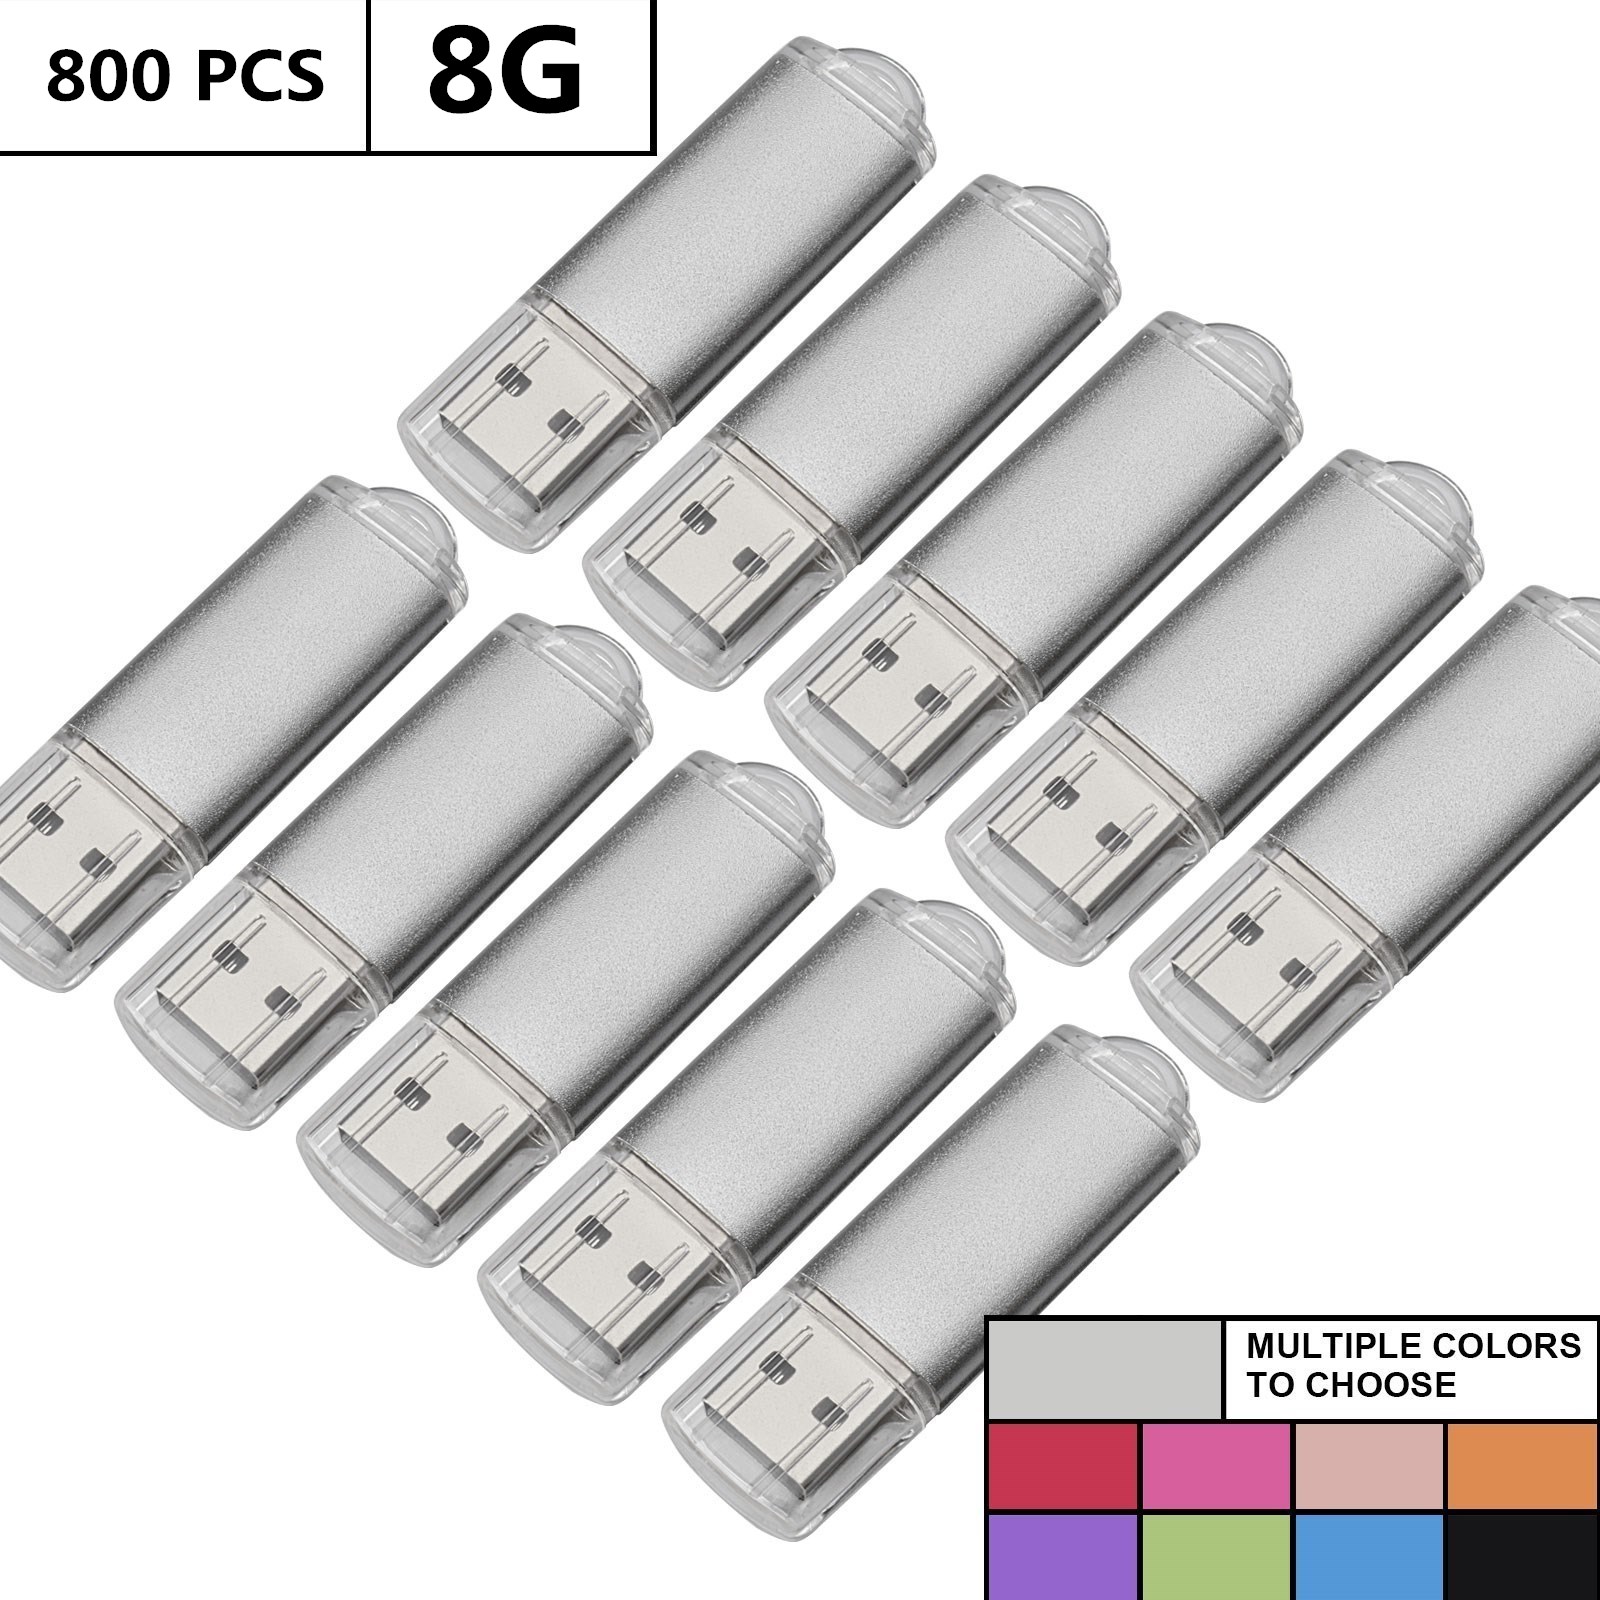 Wholesale Bulk 800PCS 8GB USB Flash Drives Rectangle Memory Stick Storage Thumb Pen Drive Storage LED Indicator for Computer Laptop Tablet